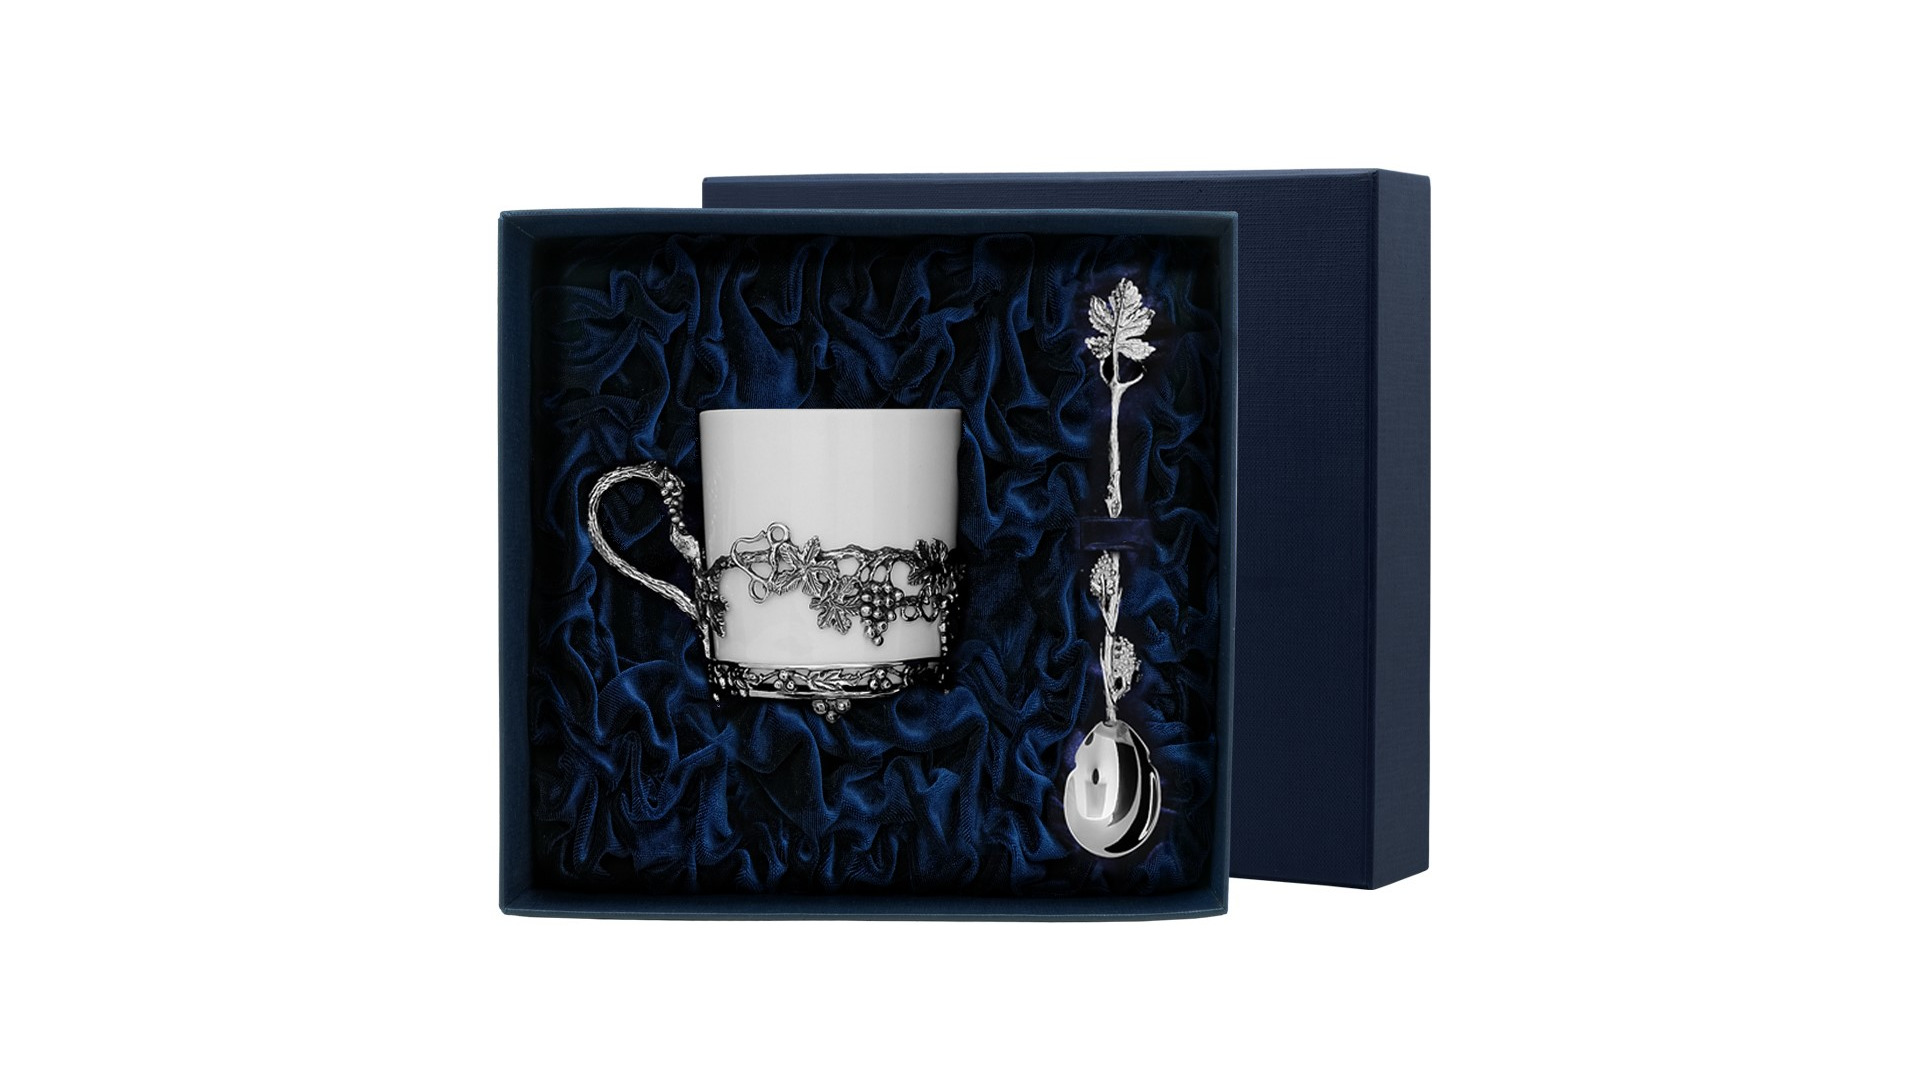 Чашка чайная с ложкой в футляре Аргента серебро 925 и Фарфор Виноград 113,3 г, серебро 925